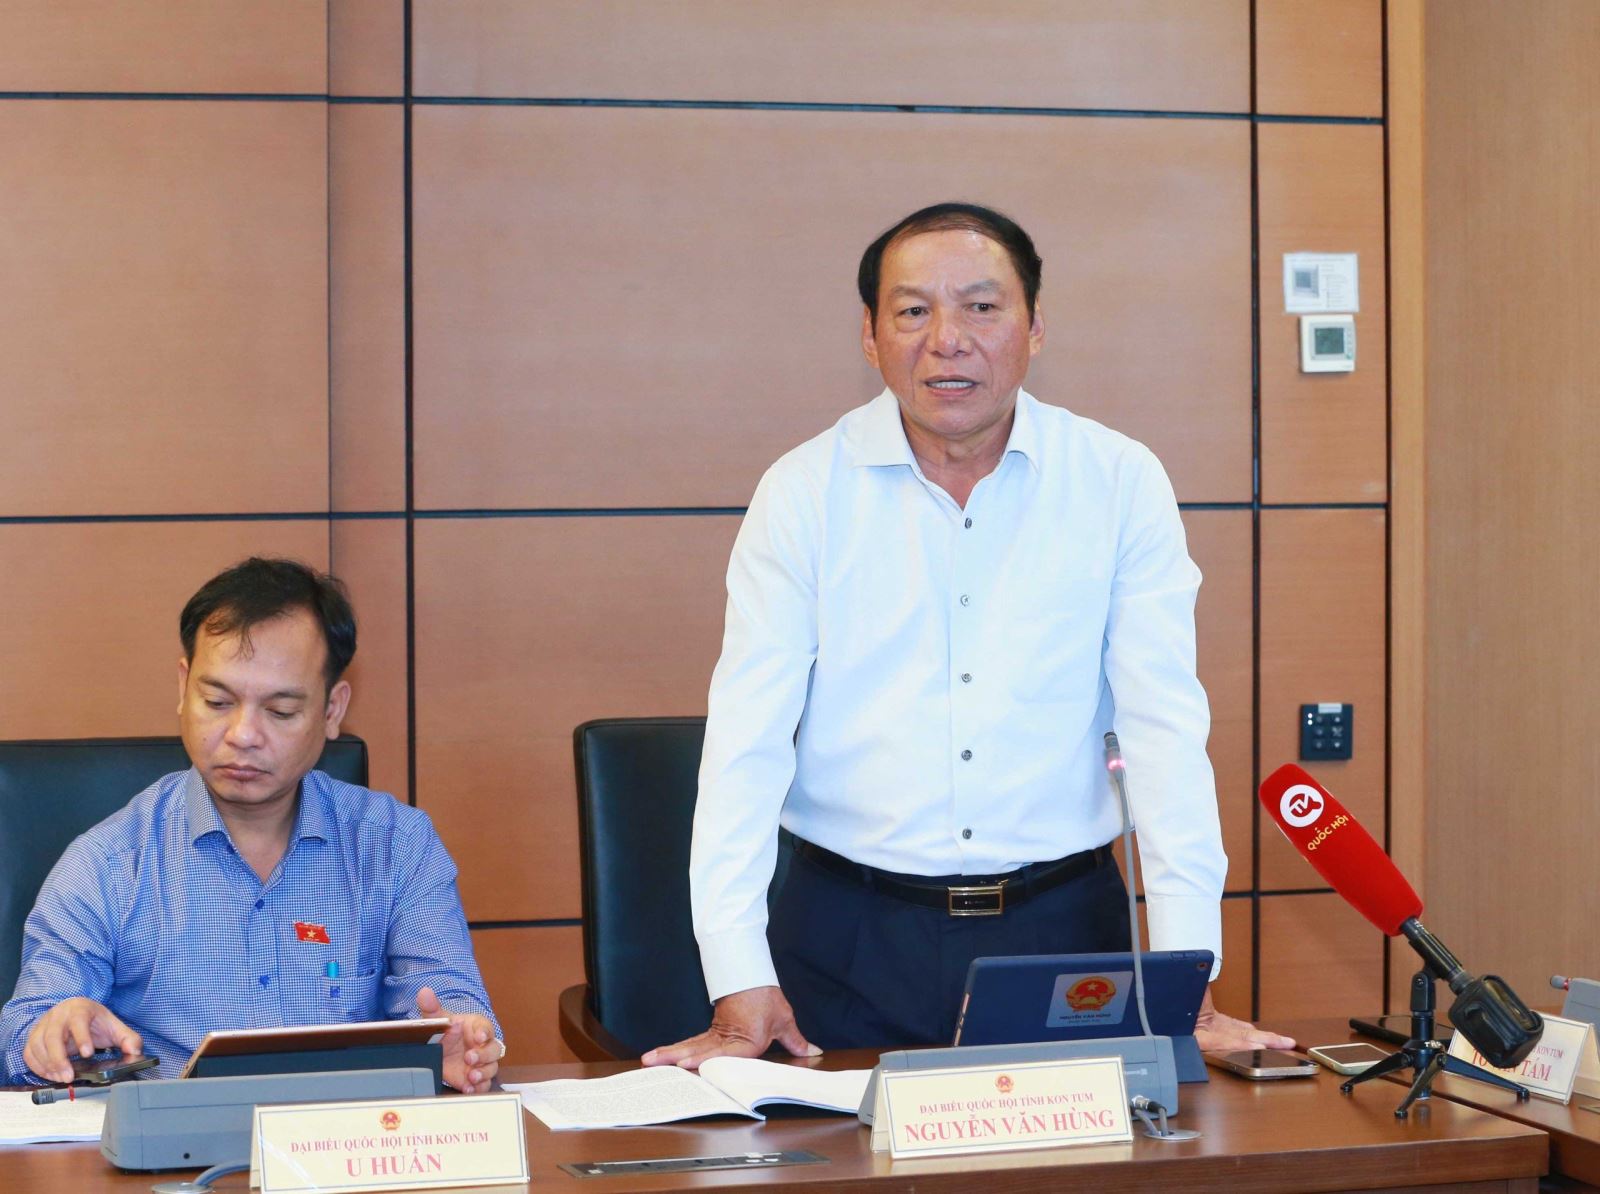 Bộ trưởng Nguyễn Văn Hùng: Văn hóa là lĩnh vực rộng, phải làm lâu dài và có lộ trình